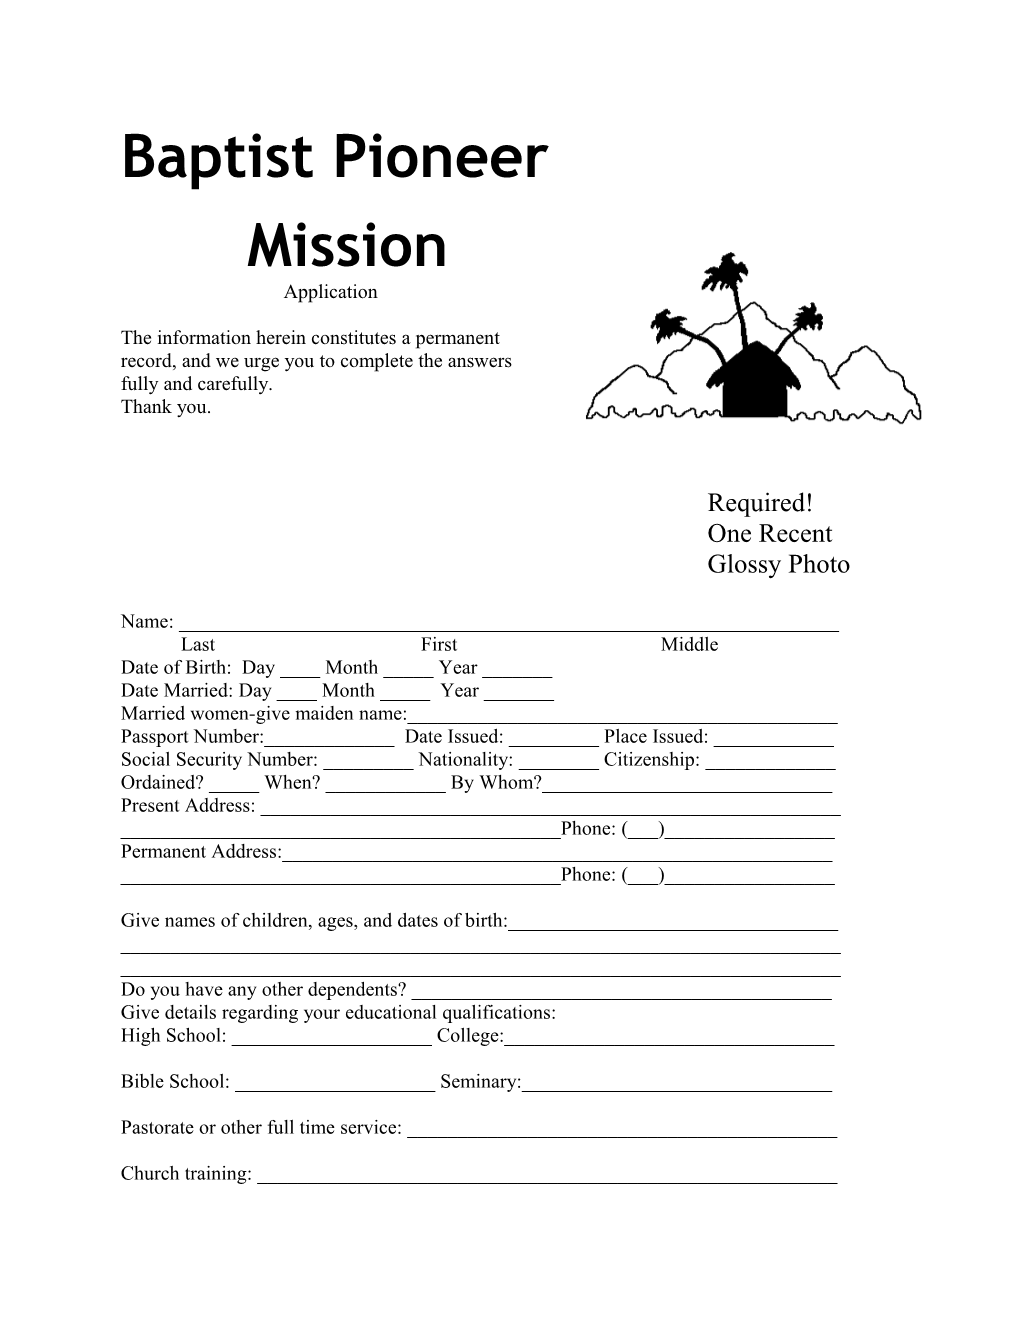 Baptist Pioneer Mission